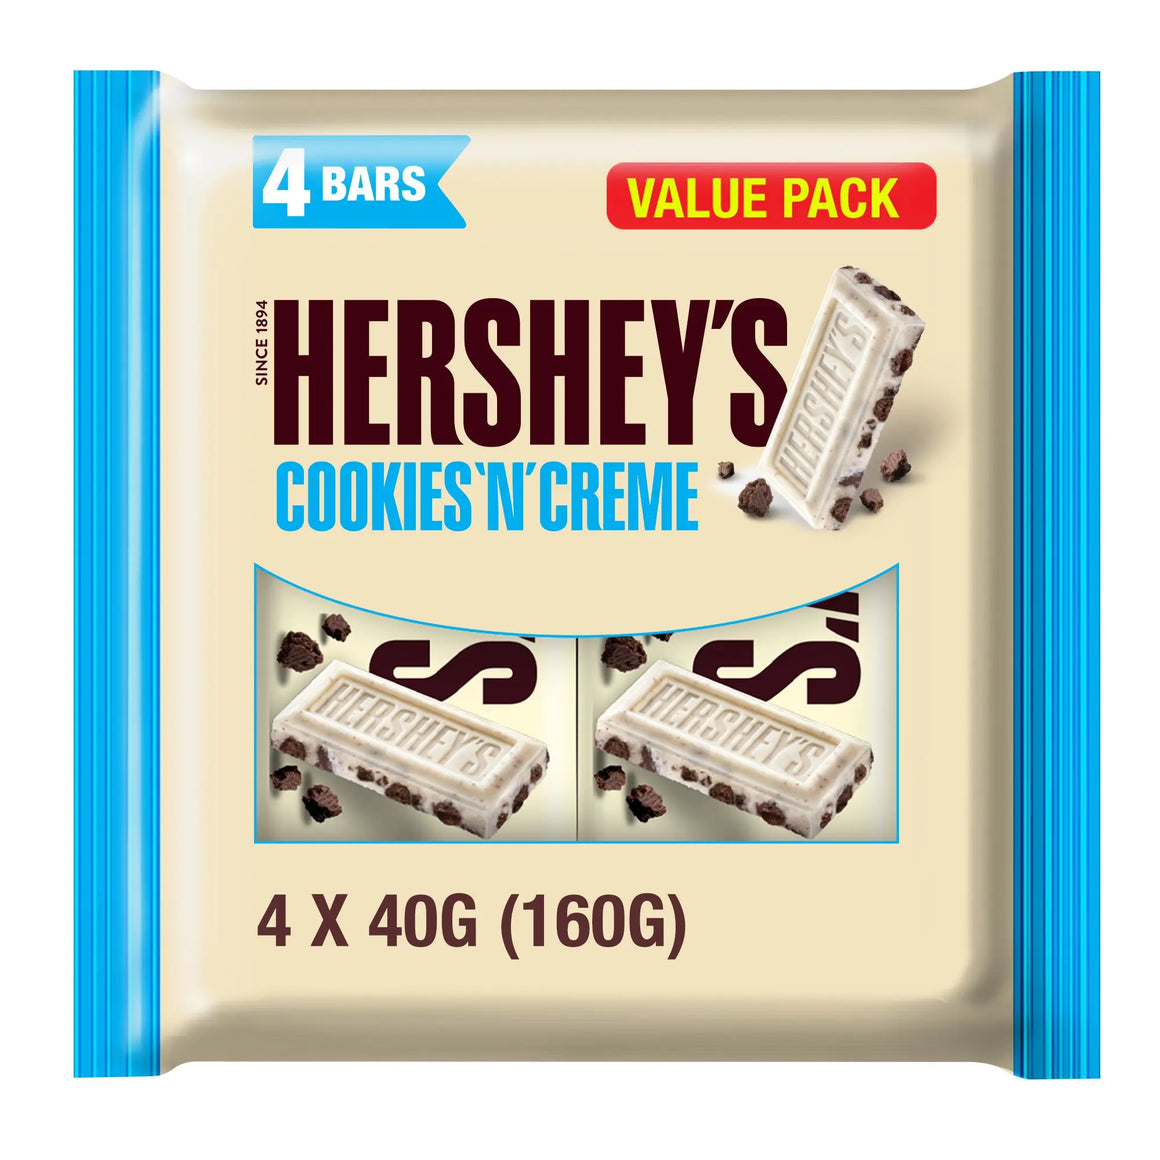 Hershey's Cookies 'n' Creme Chocolate Bar 4 x 40 gr (160 gr) Value Pack Hershey's